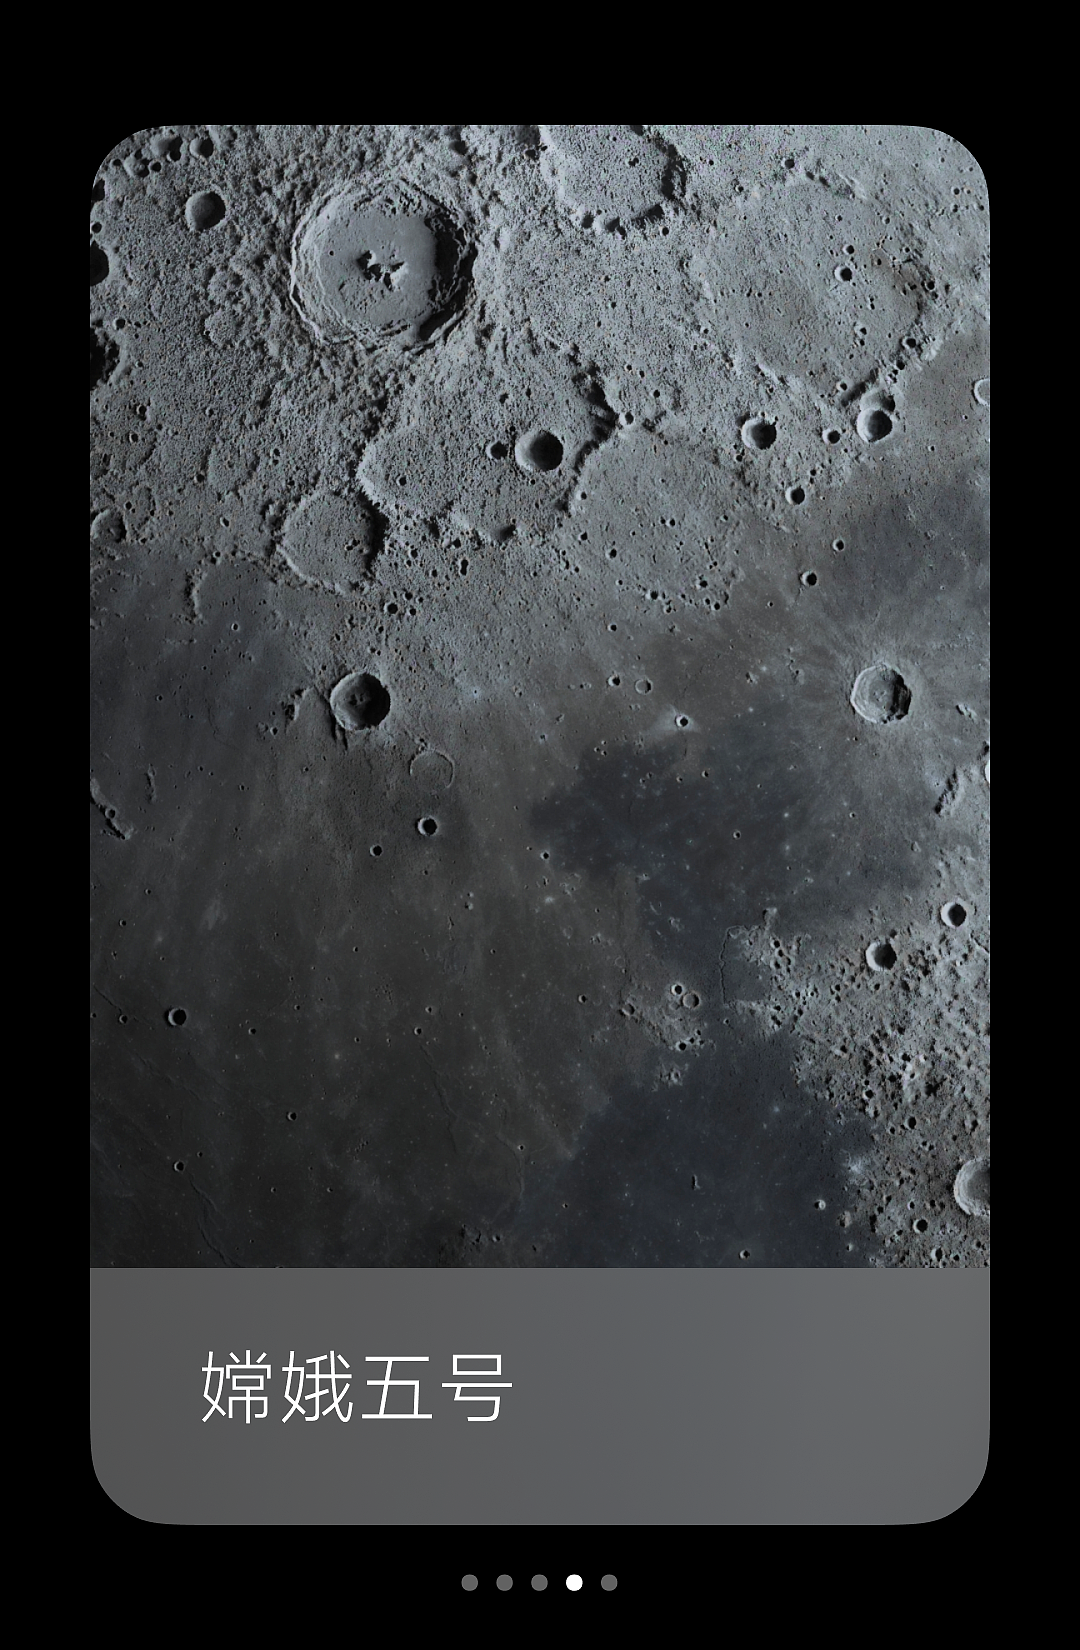 小米超级壁纸新增“月球”主题：基于澎湃 OS 图形子系统，内存占用大幅降低 - 6